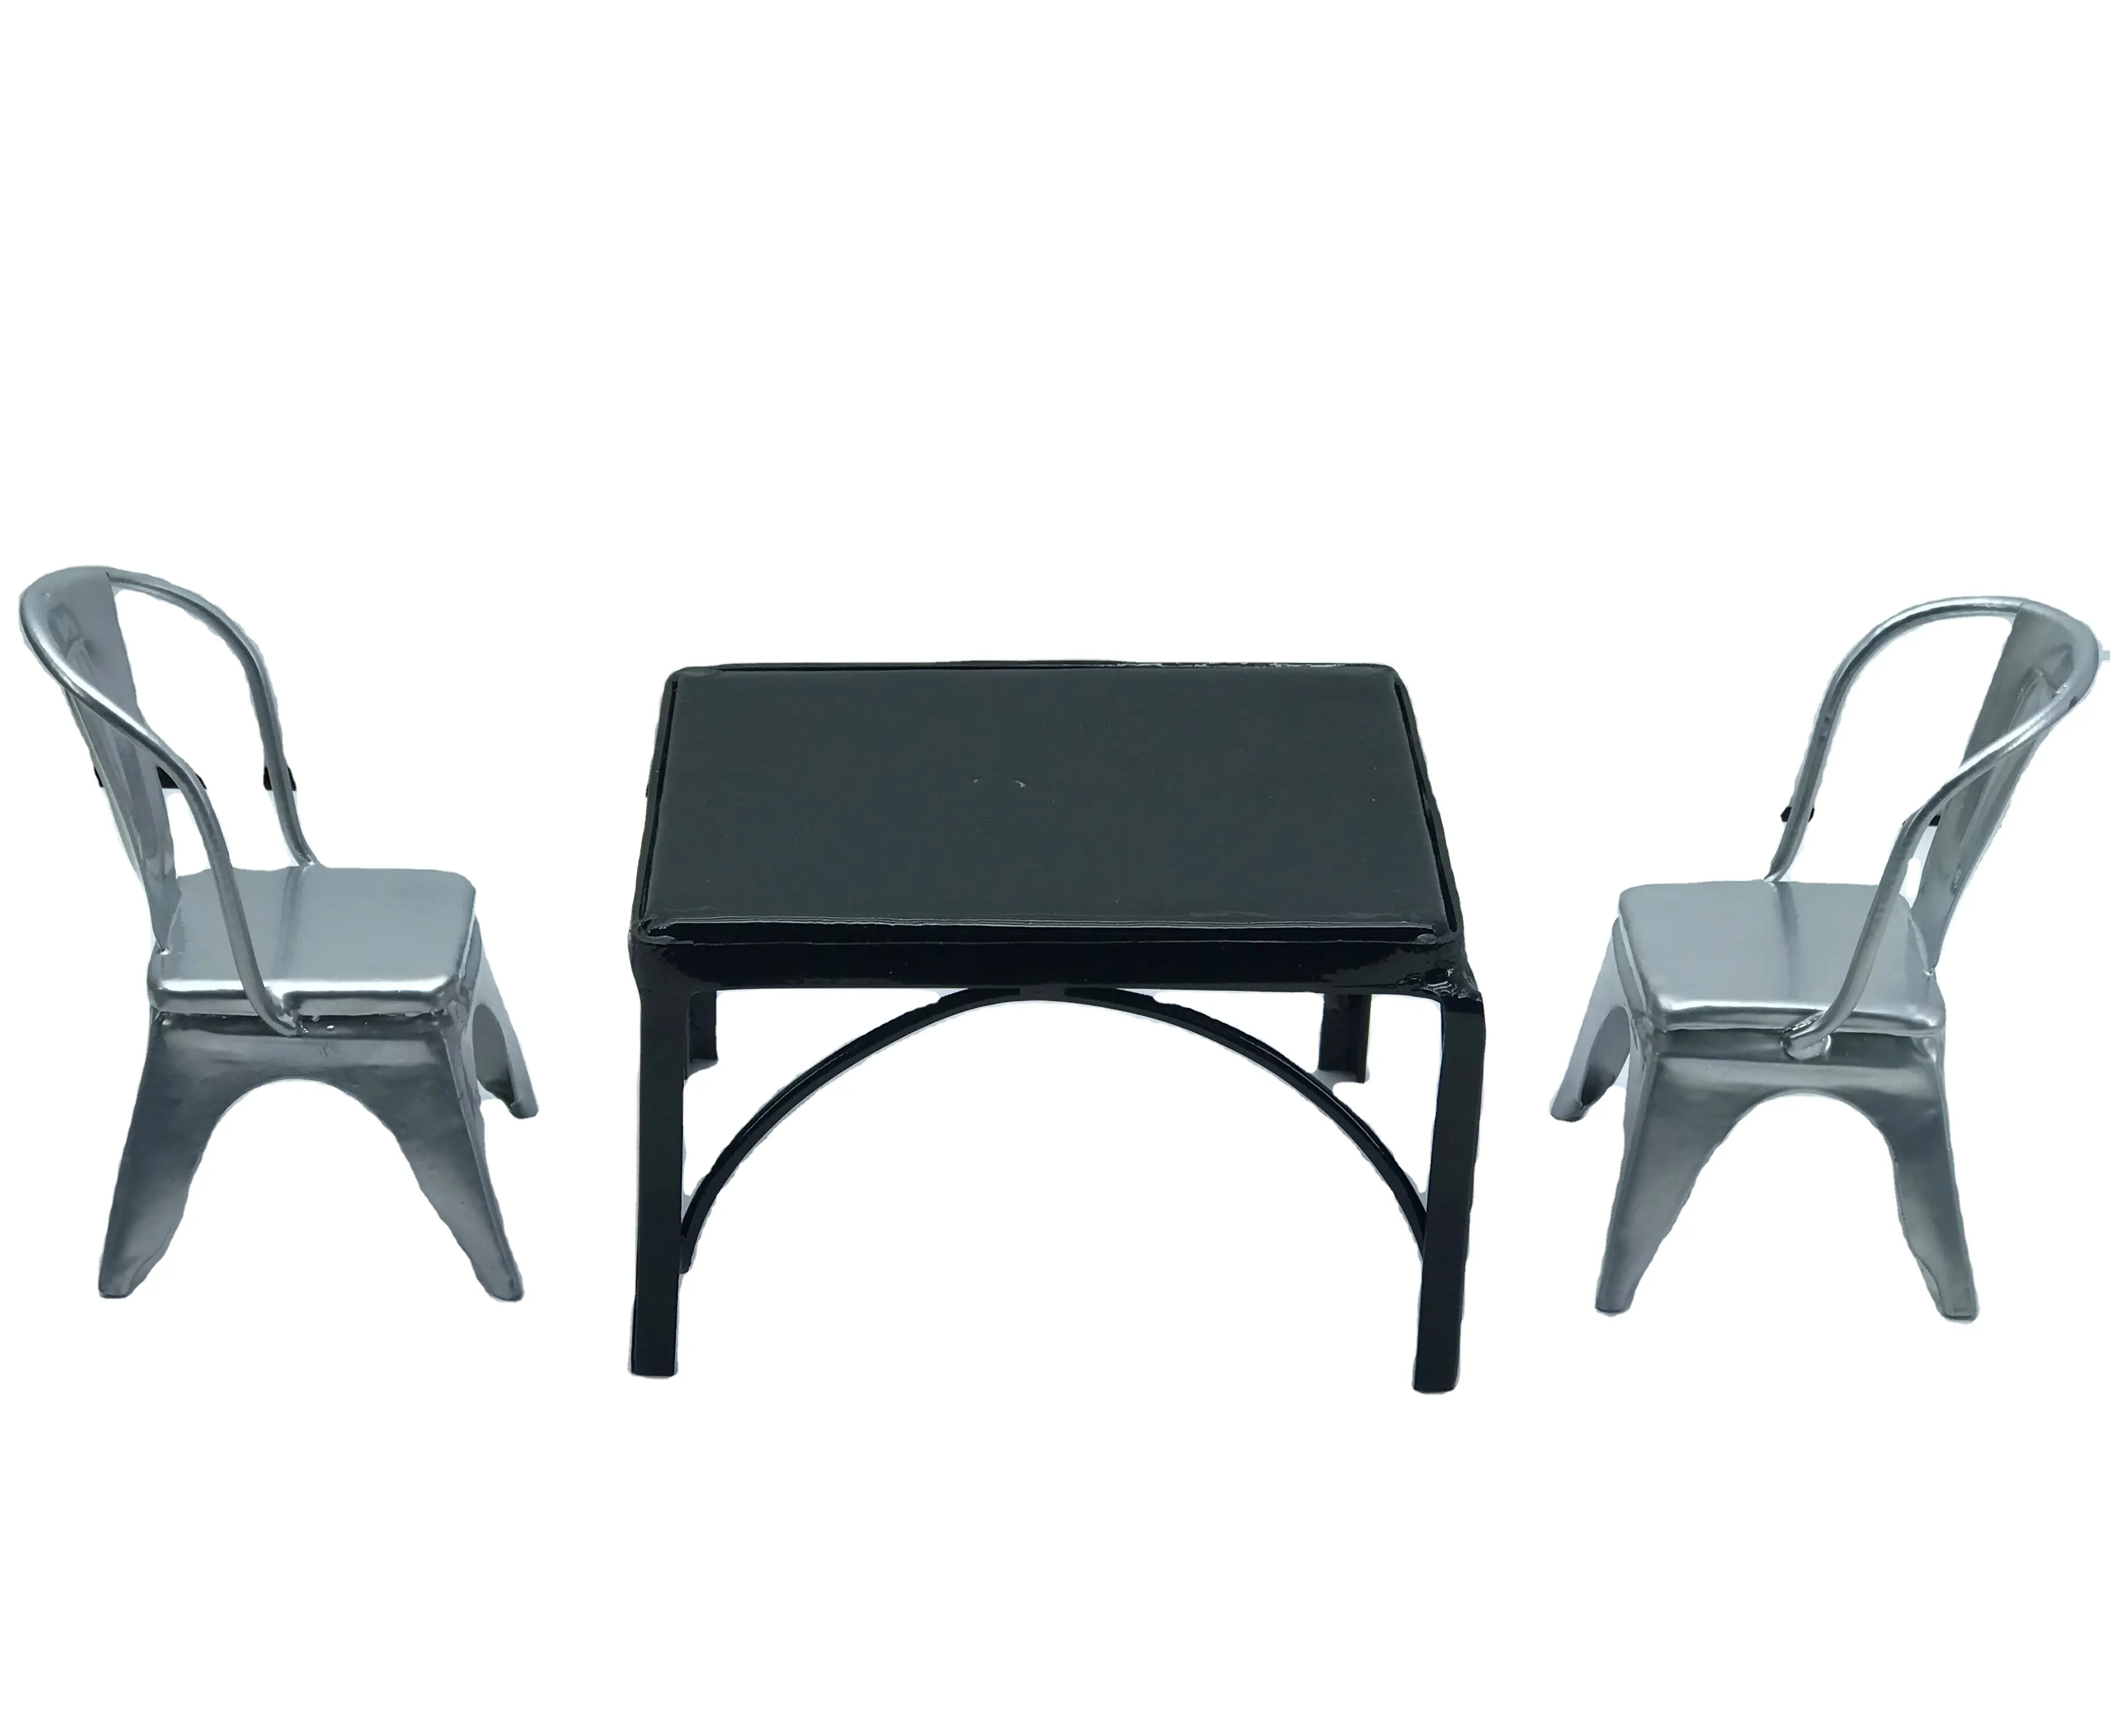 2 के सेट चांदी कुर्सी और काले टेबल गुड़िया घर लघु डाइनिंग सेट फर्नीचर धातु आयरन उच्च गुणवत्ता